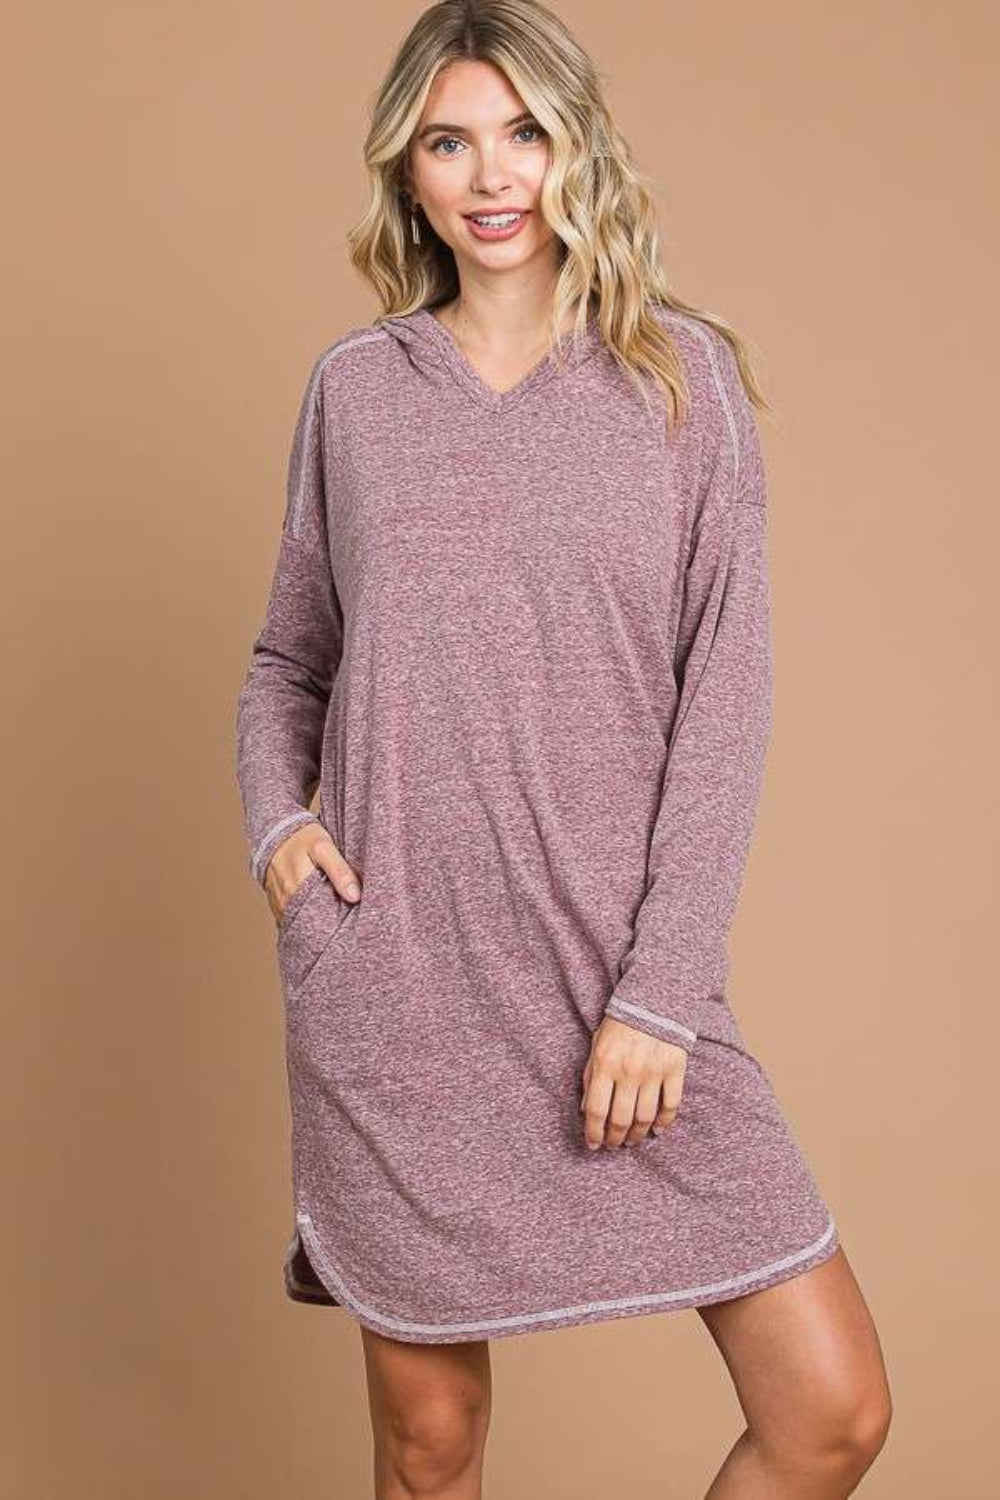 Culture Code – Langes Pulloverkleid mit Kapuze und langen Ärmeln in voller Größe